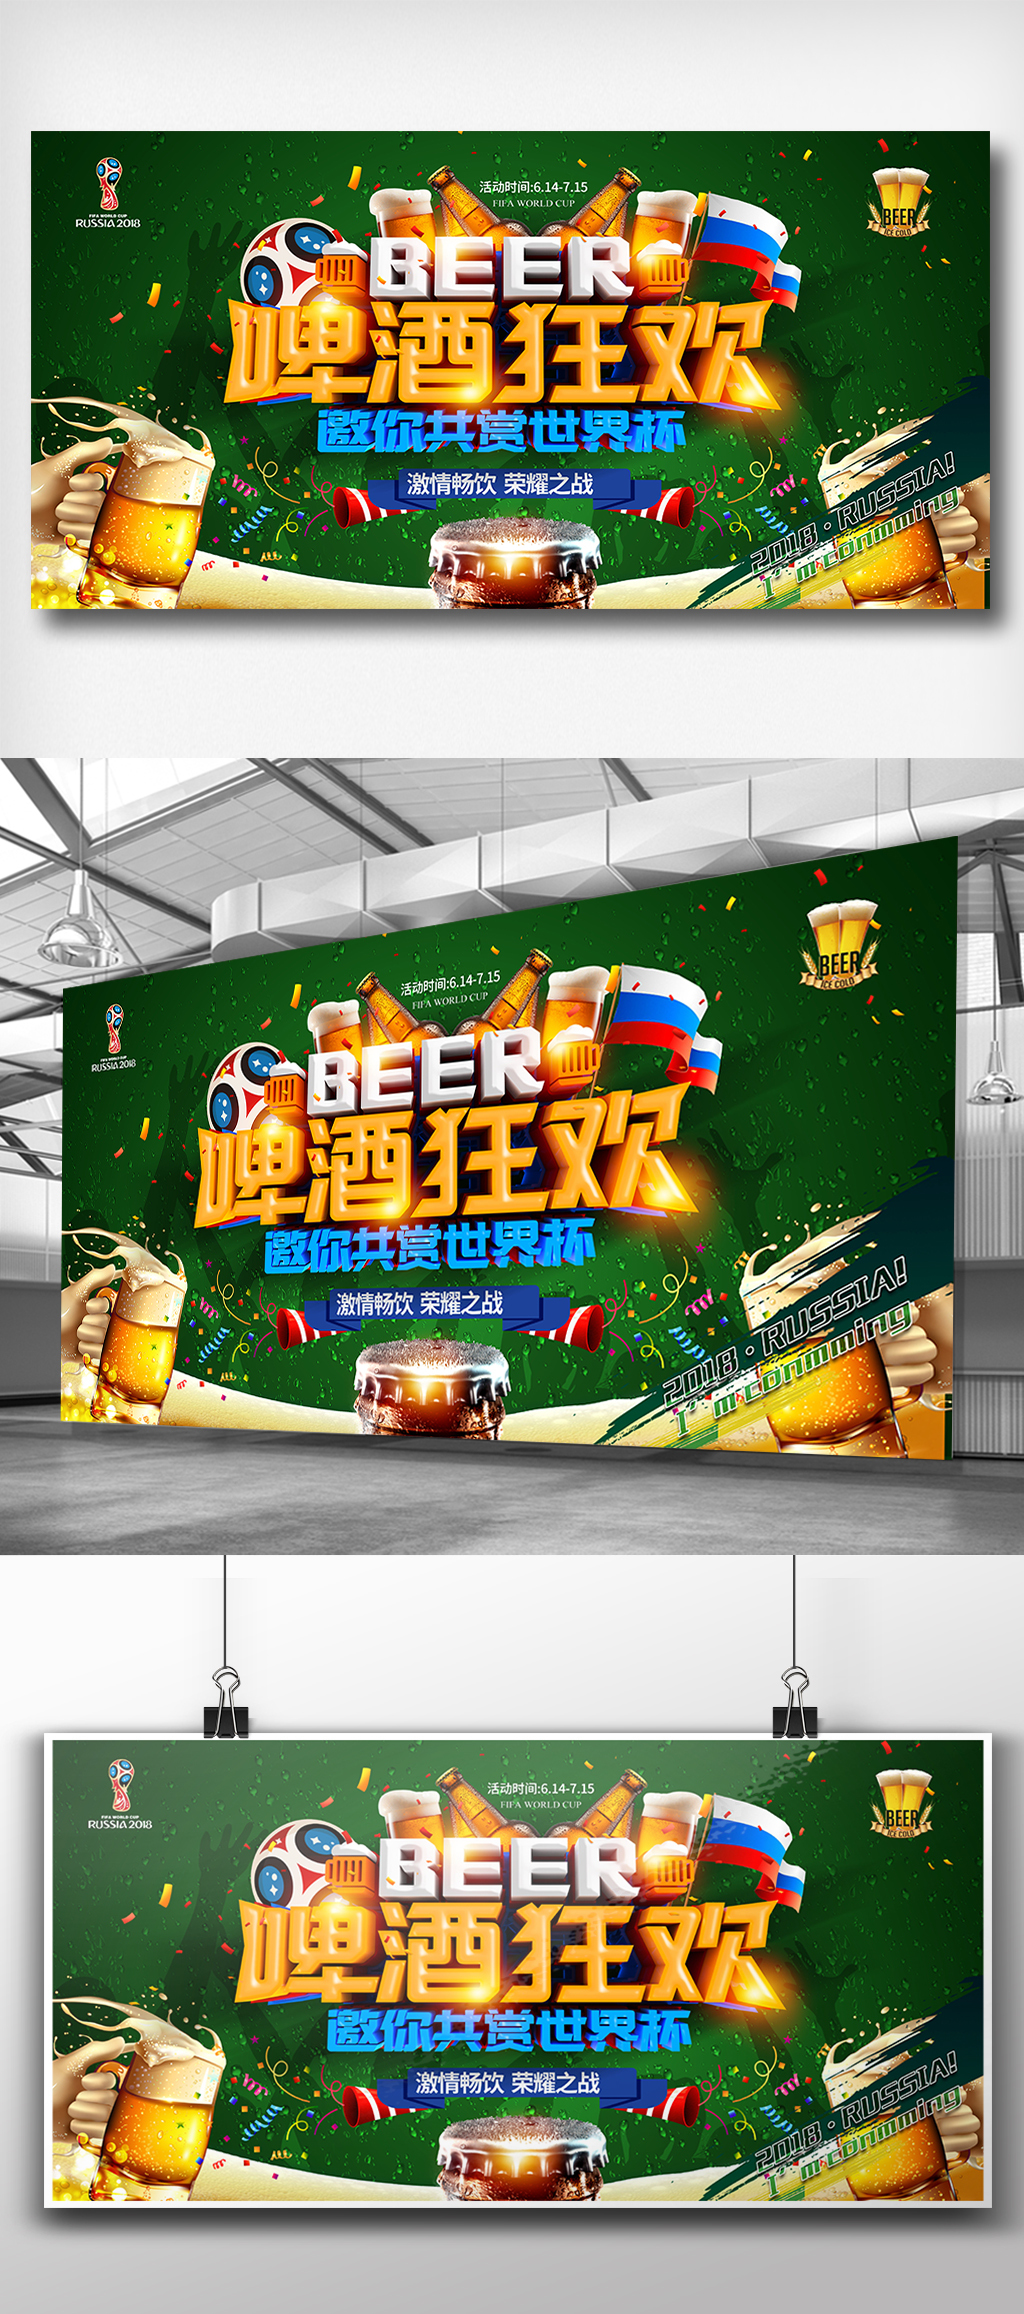 2018世界杯啤酒酒吧展板